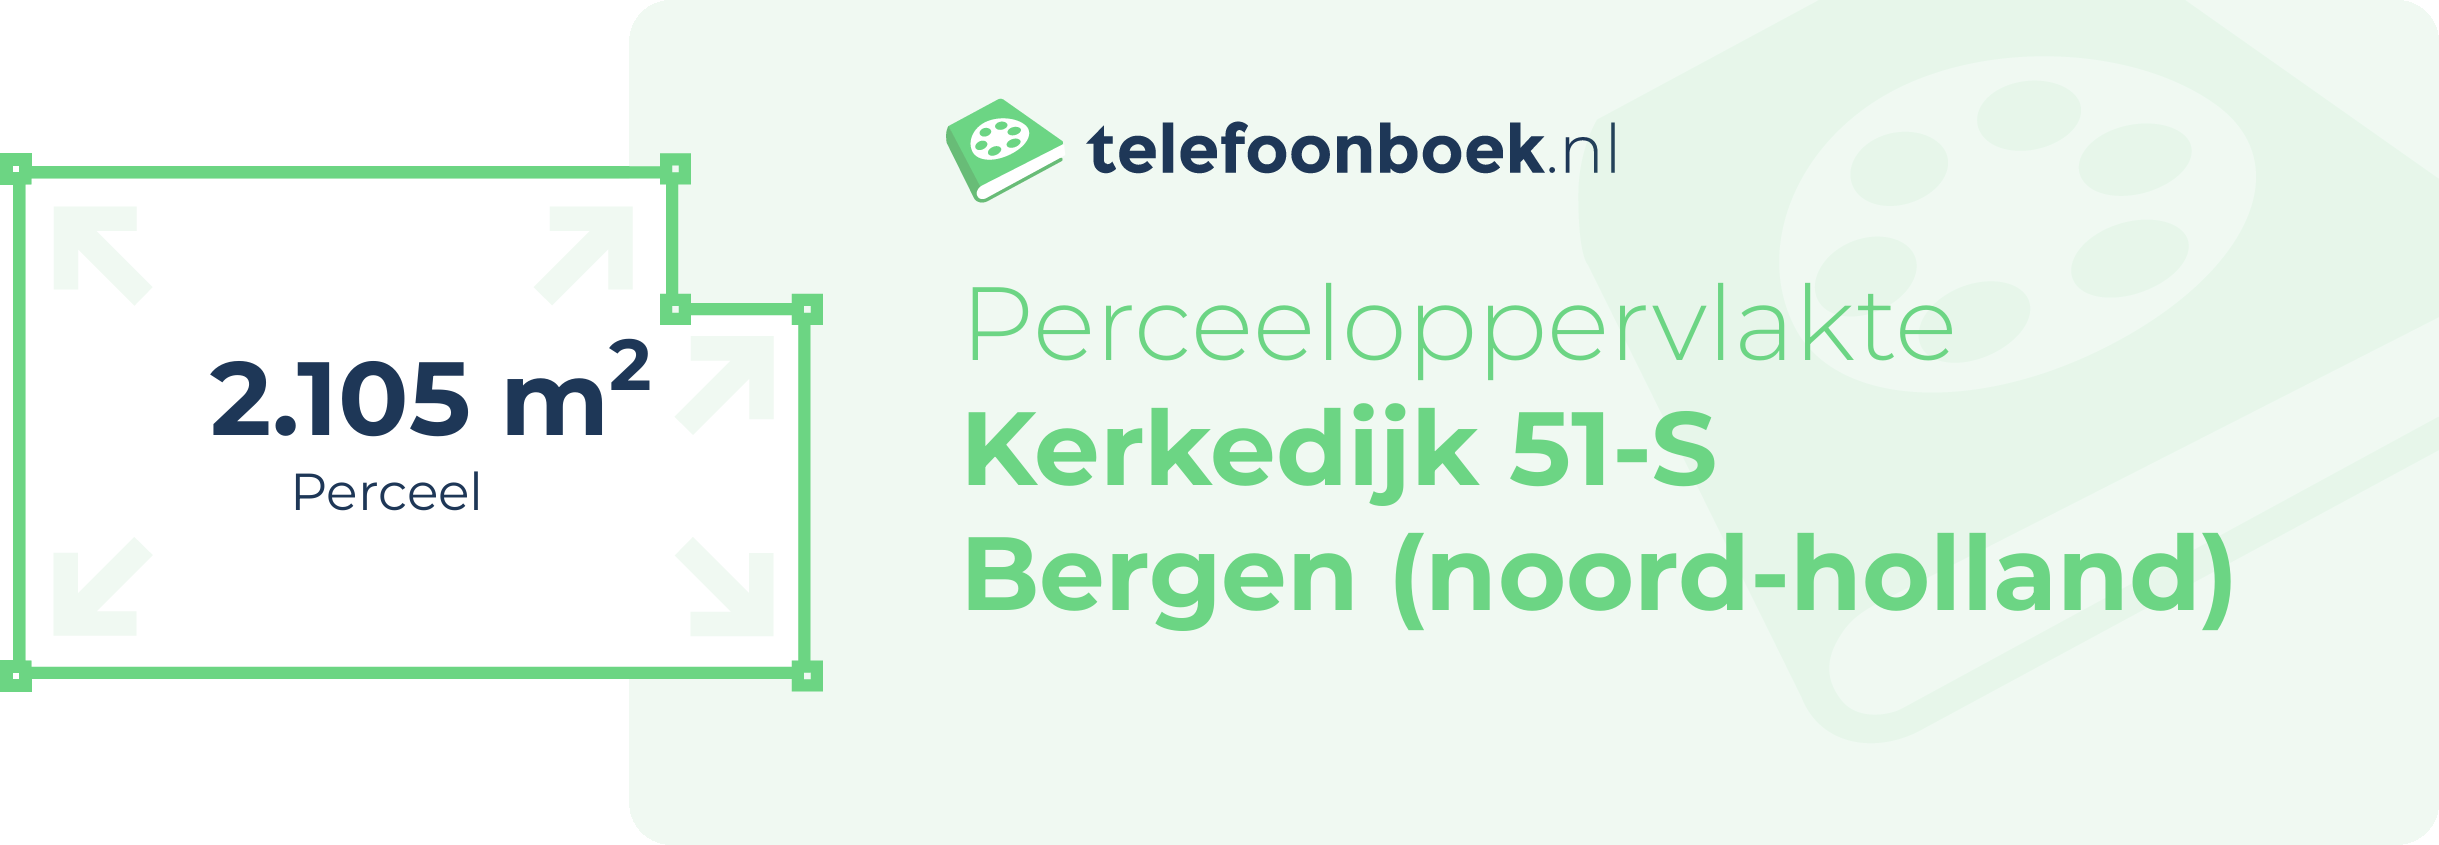 Perceeloppervlakte Kerkedijk 51-S Bergen (Noord-Holland)